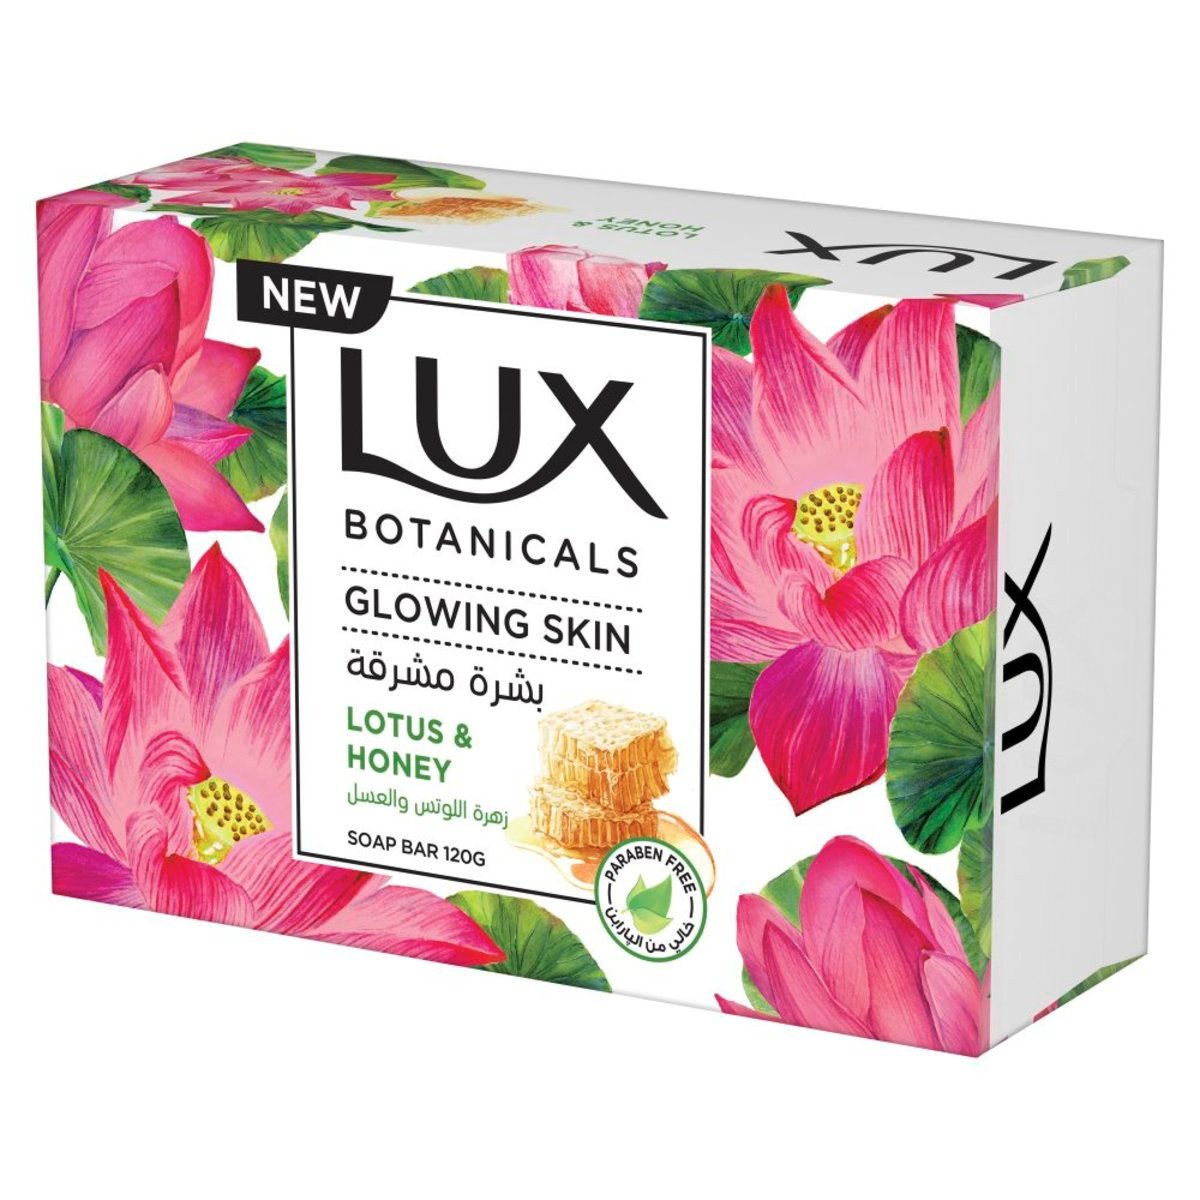 Lux Botanicals Glowing Skin Bar Soap Lotus & Honey 120 g